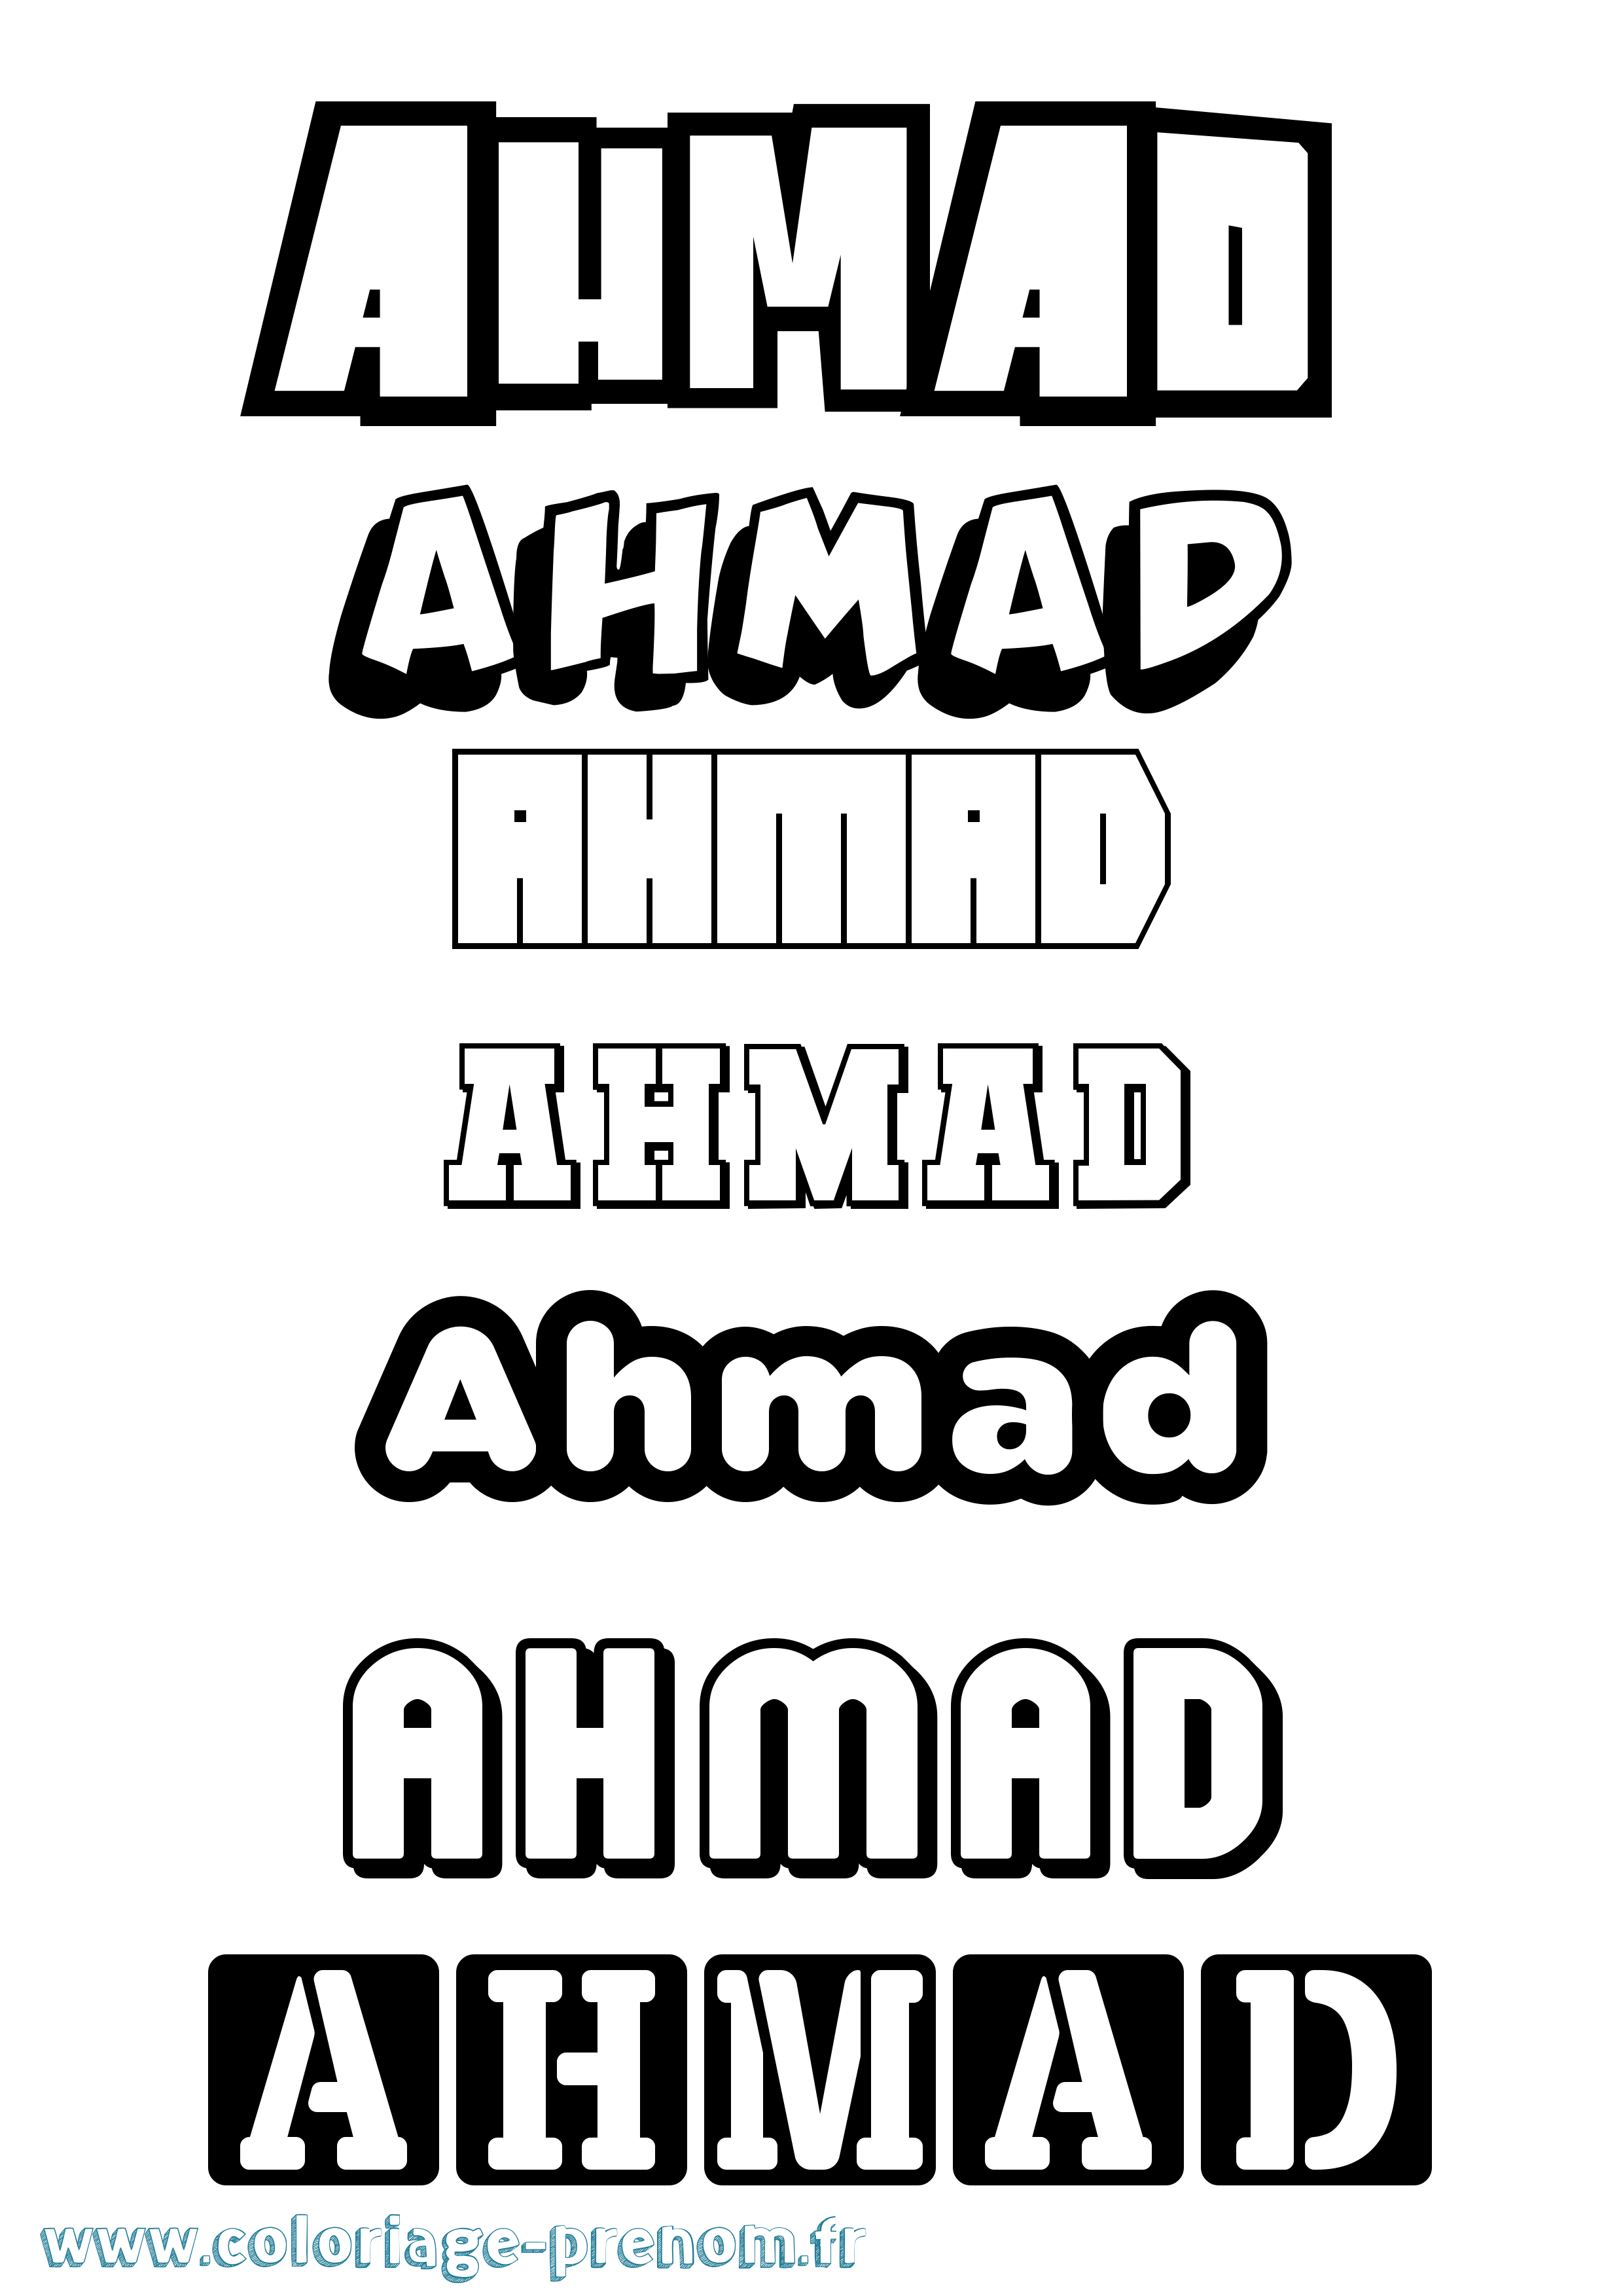 Coloriage prénom Ahmad Simple